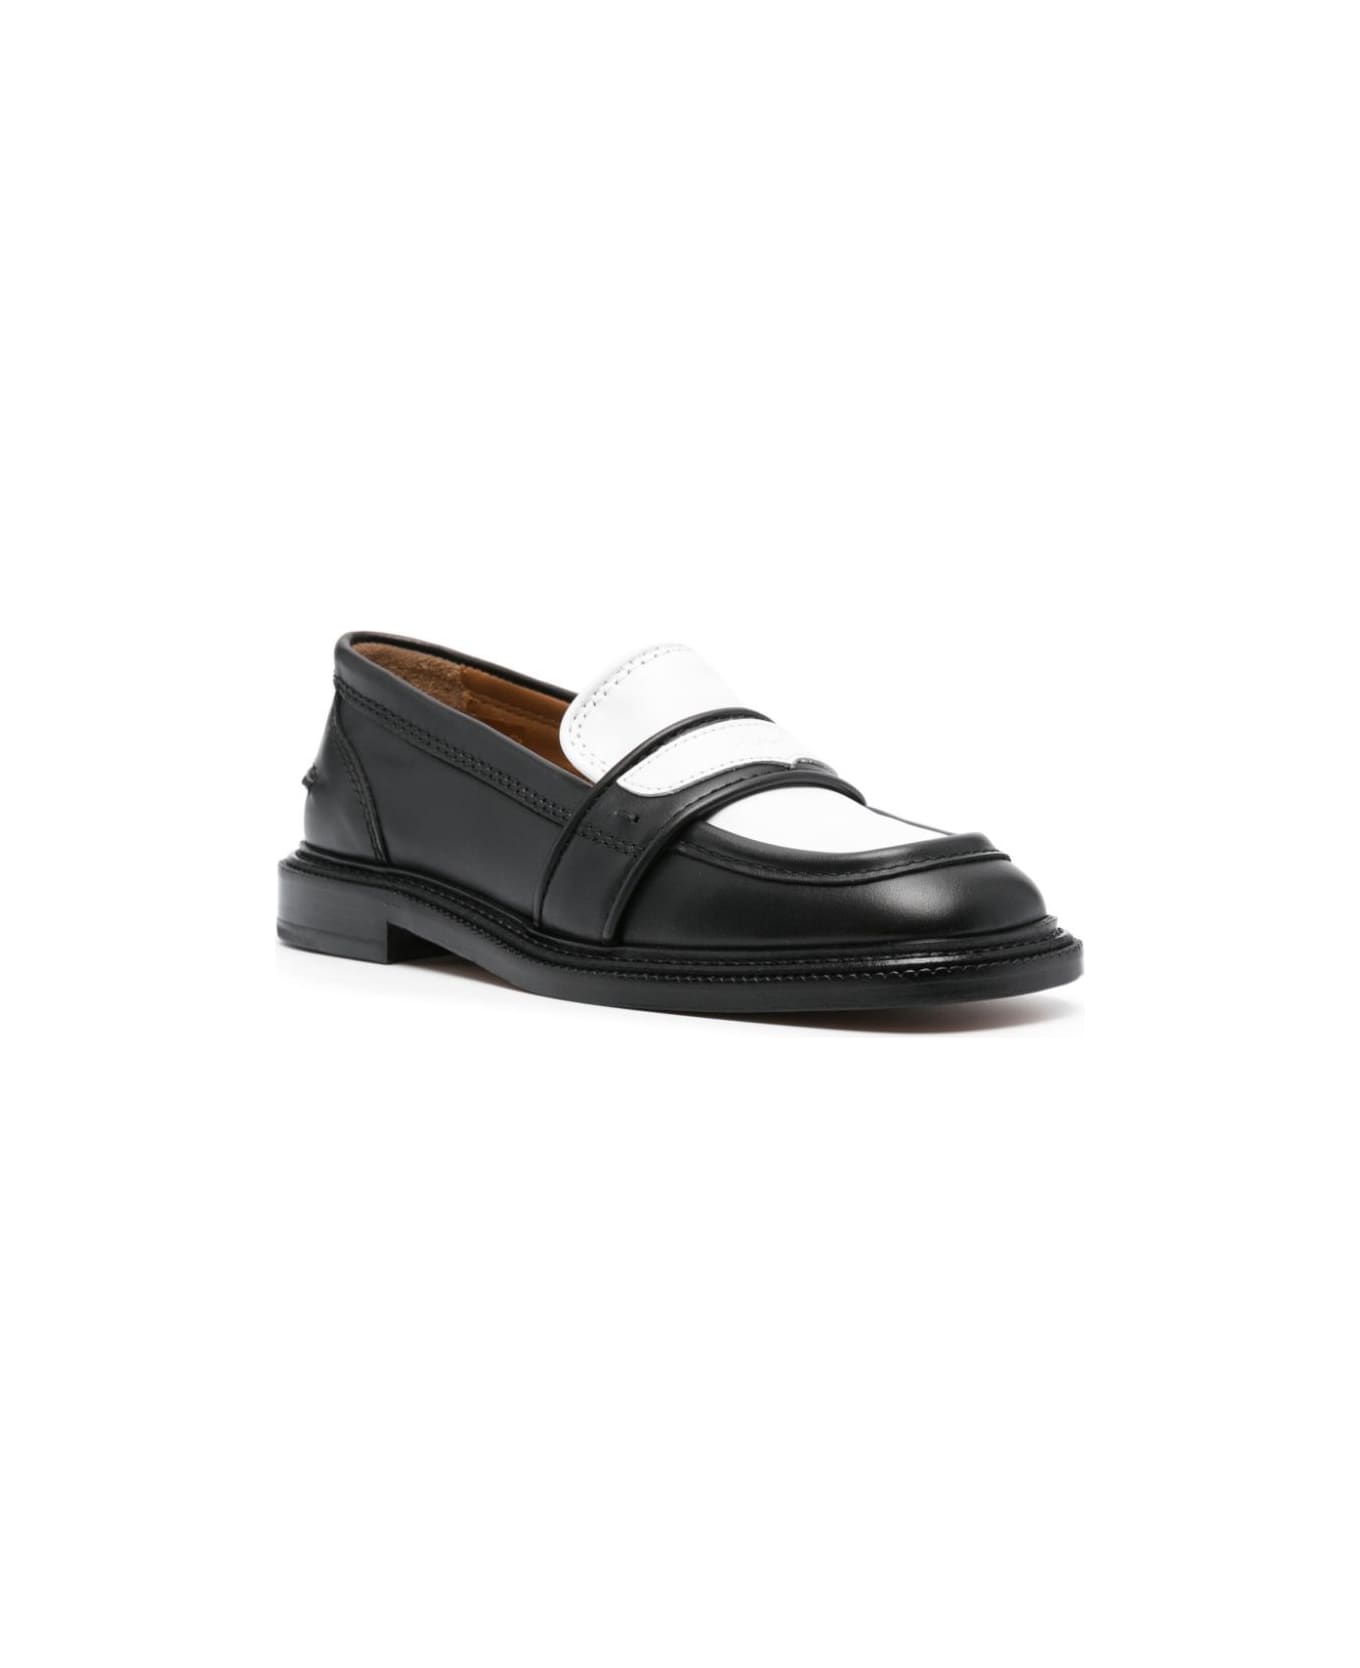 Maison Kitsuné Bicolor Leather Loafers - Black White